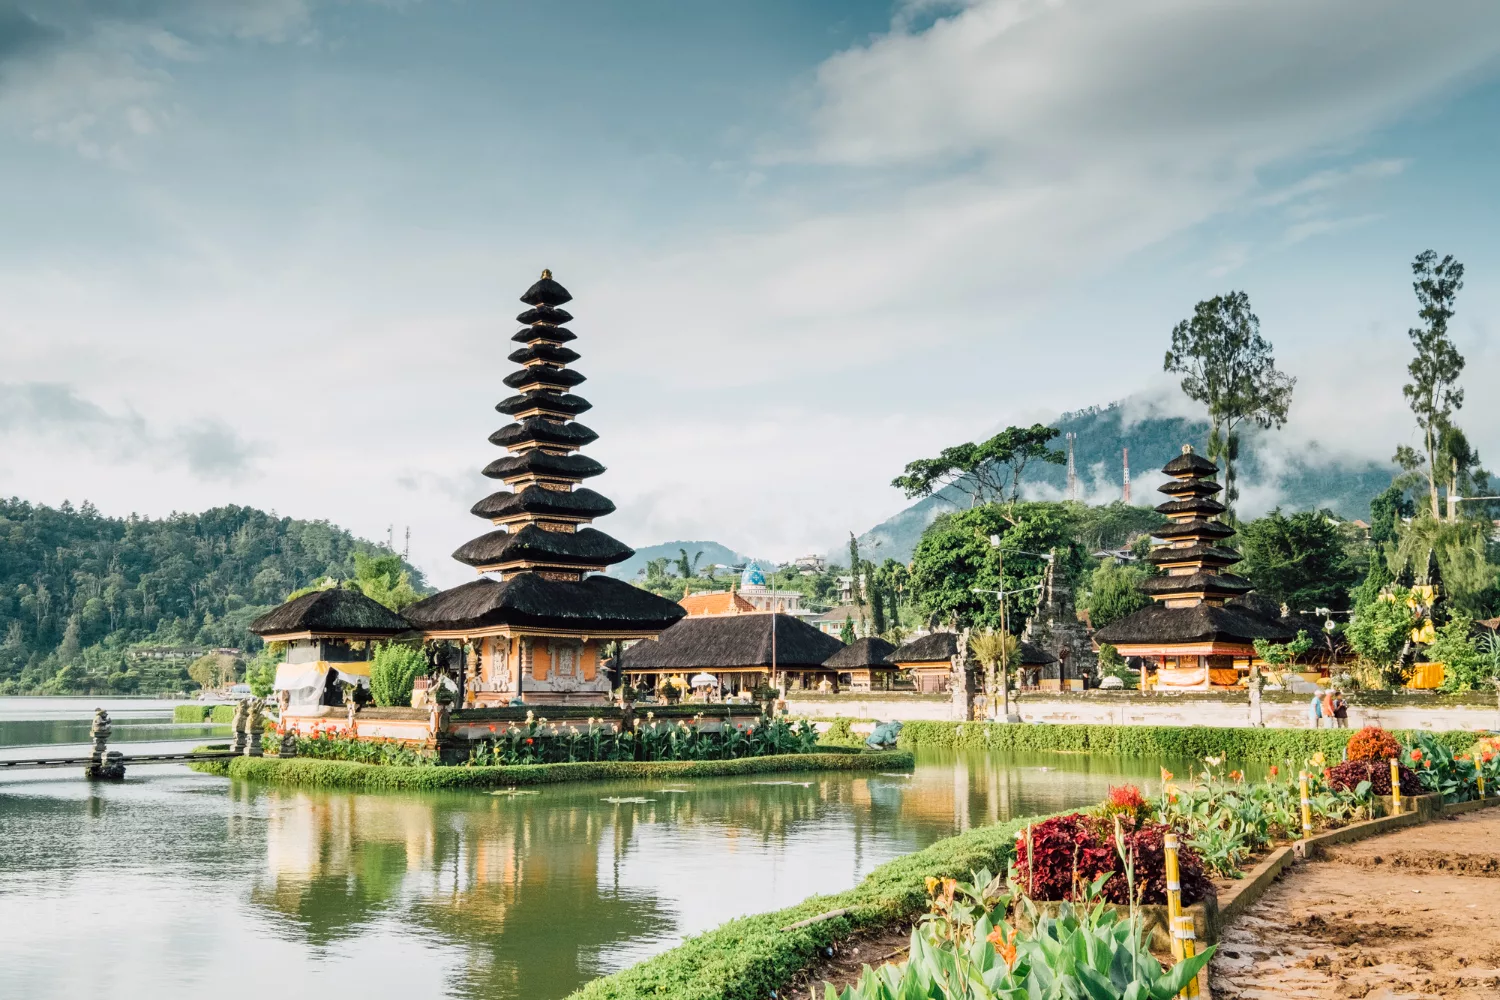 Things to Do in Bali - Danu Beratan Temple